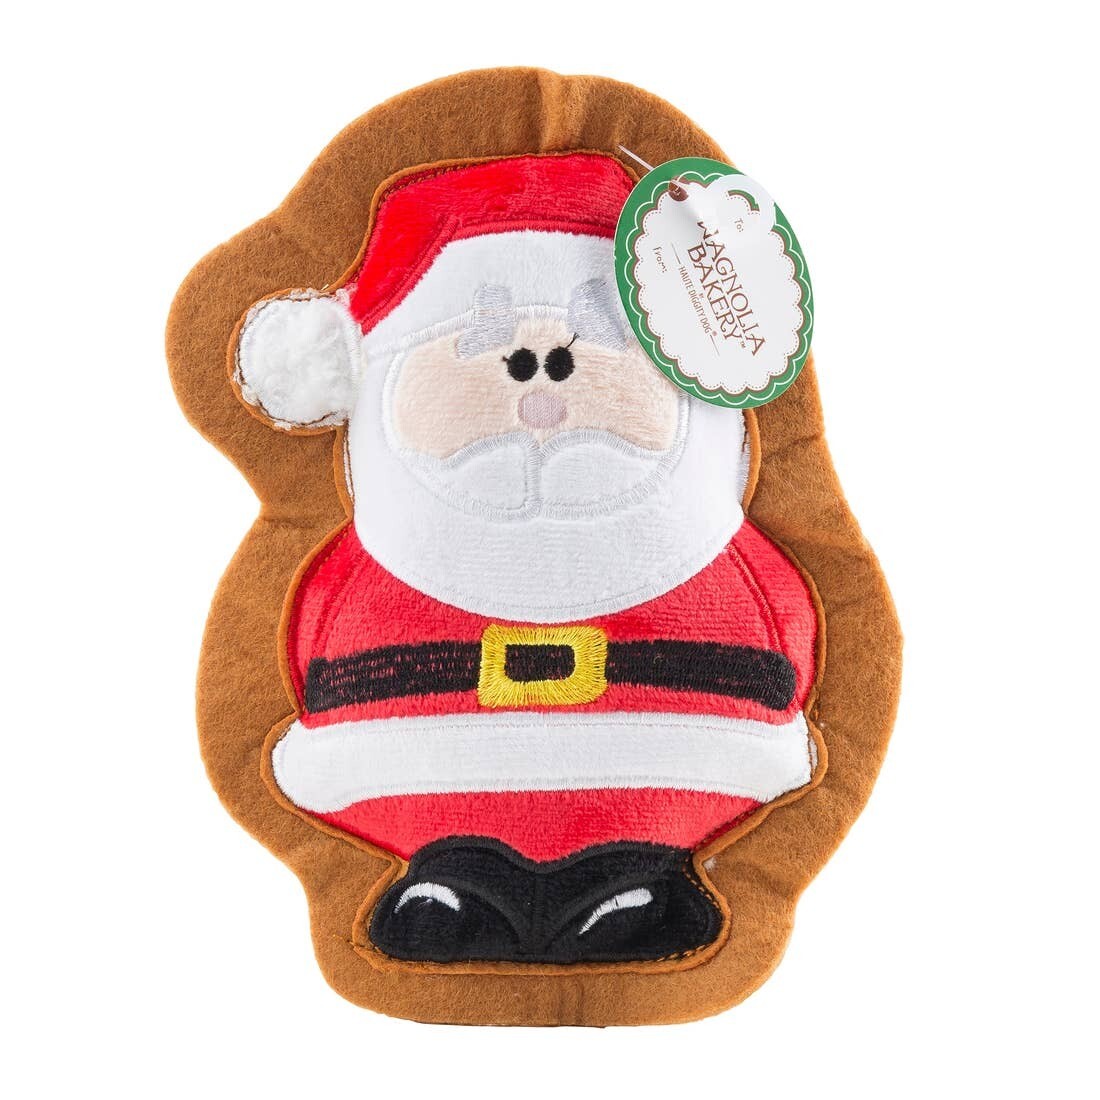 Wagnolia Bakery - Santa Claus Toy